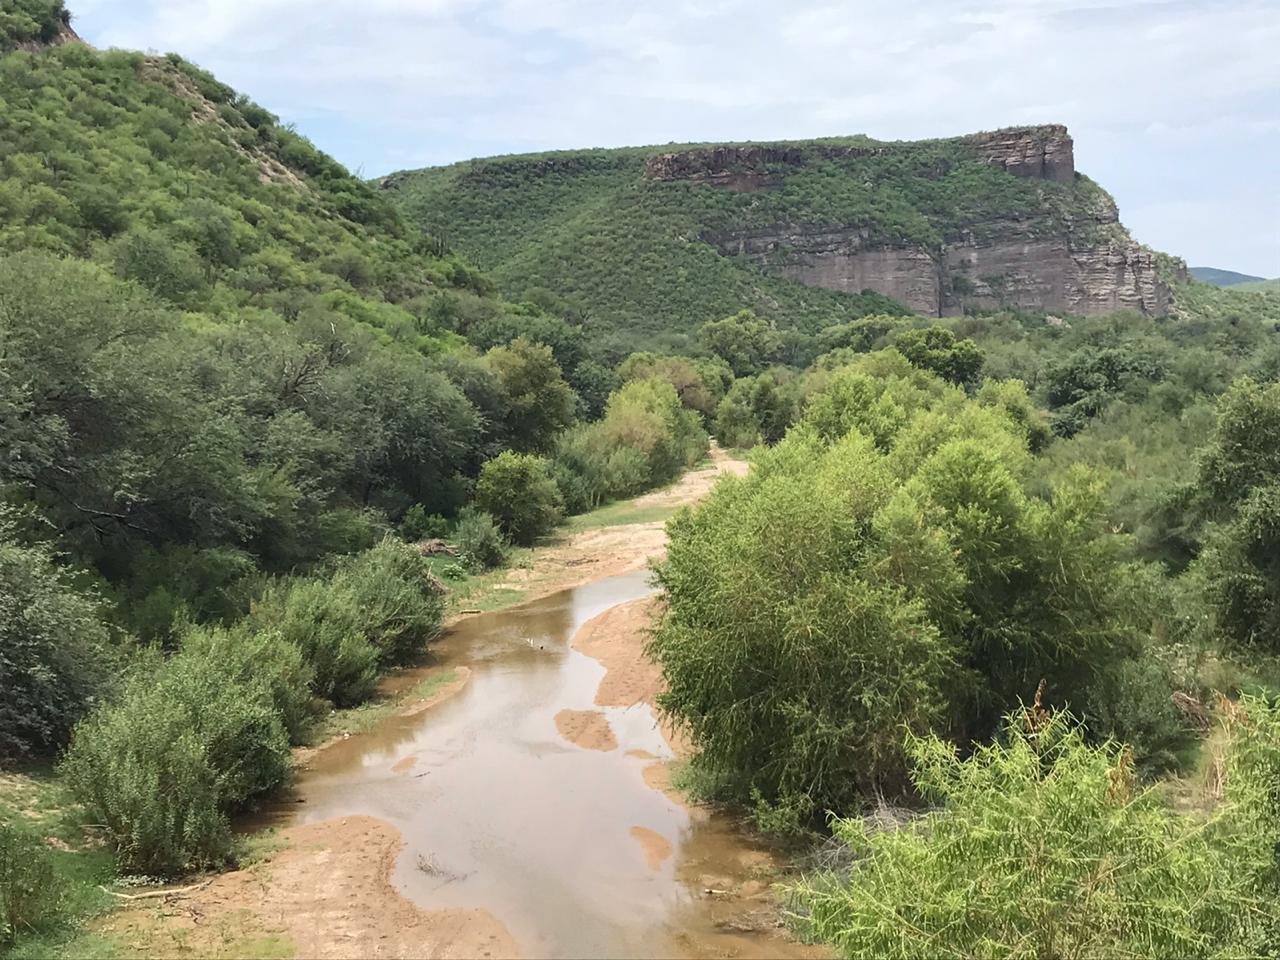 Hay novedades relacionado al tema del Río Sonora